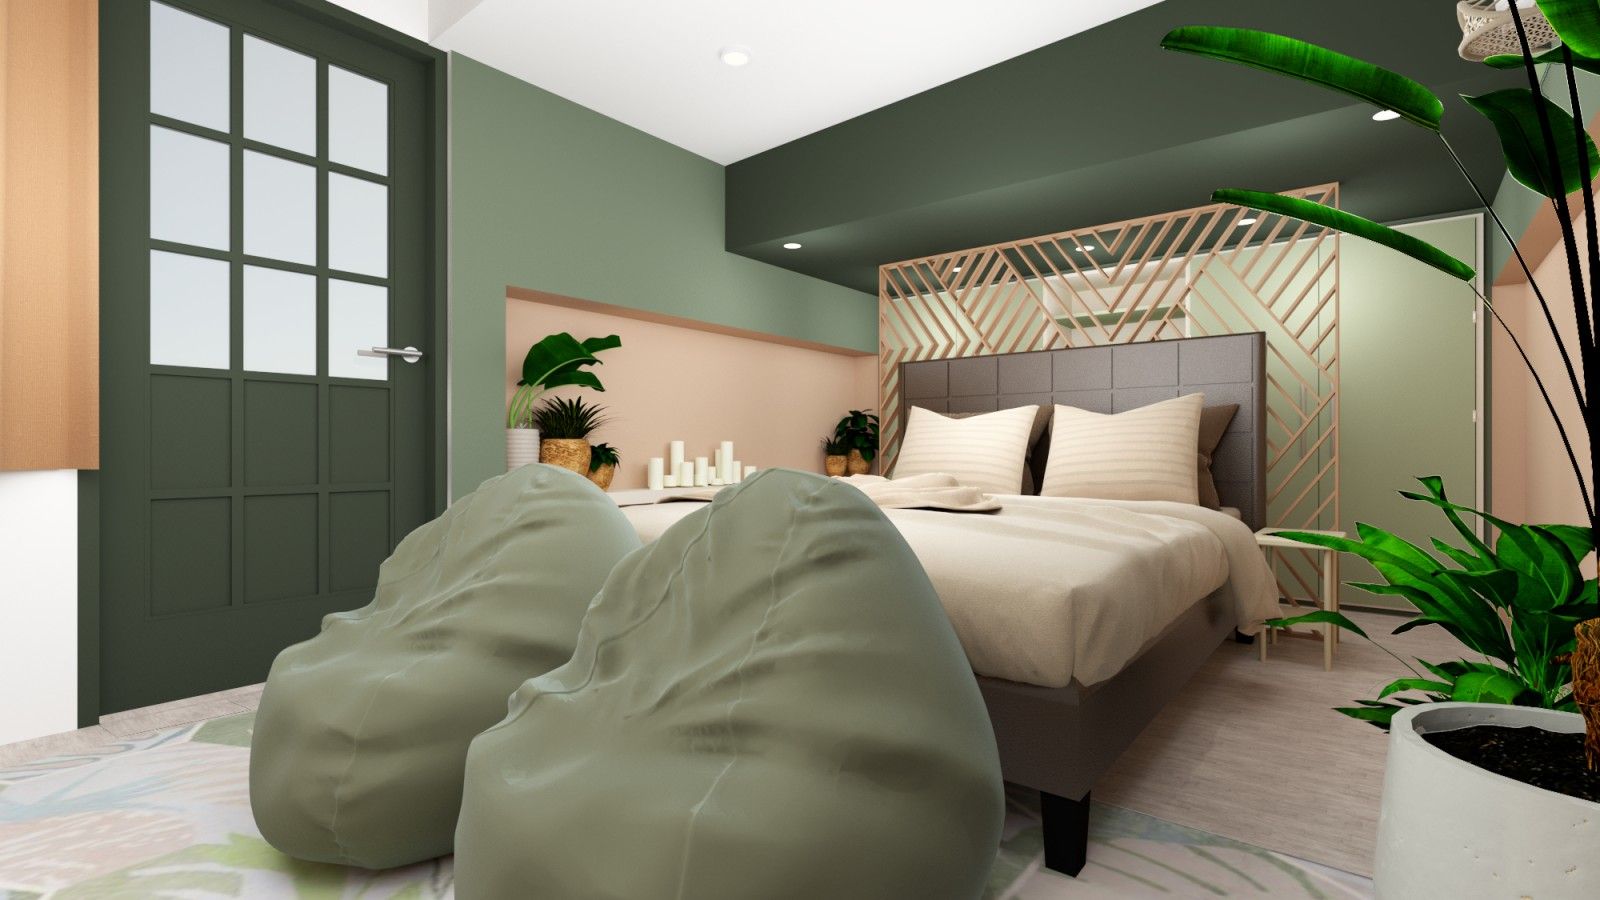 RM Bedroom Project, Quadraforma Construction Quadraforma Construction 작은 침실